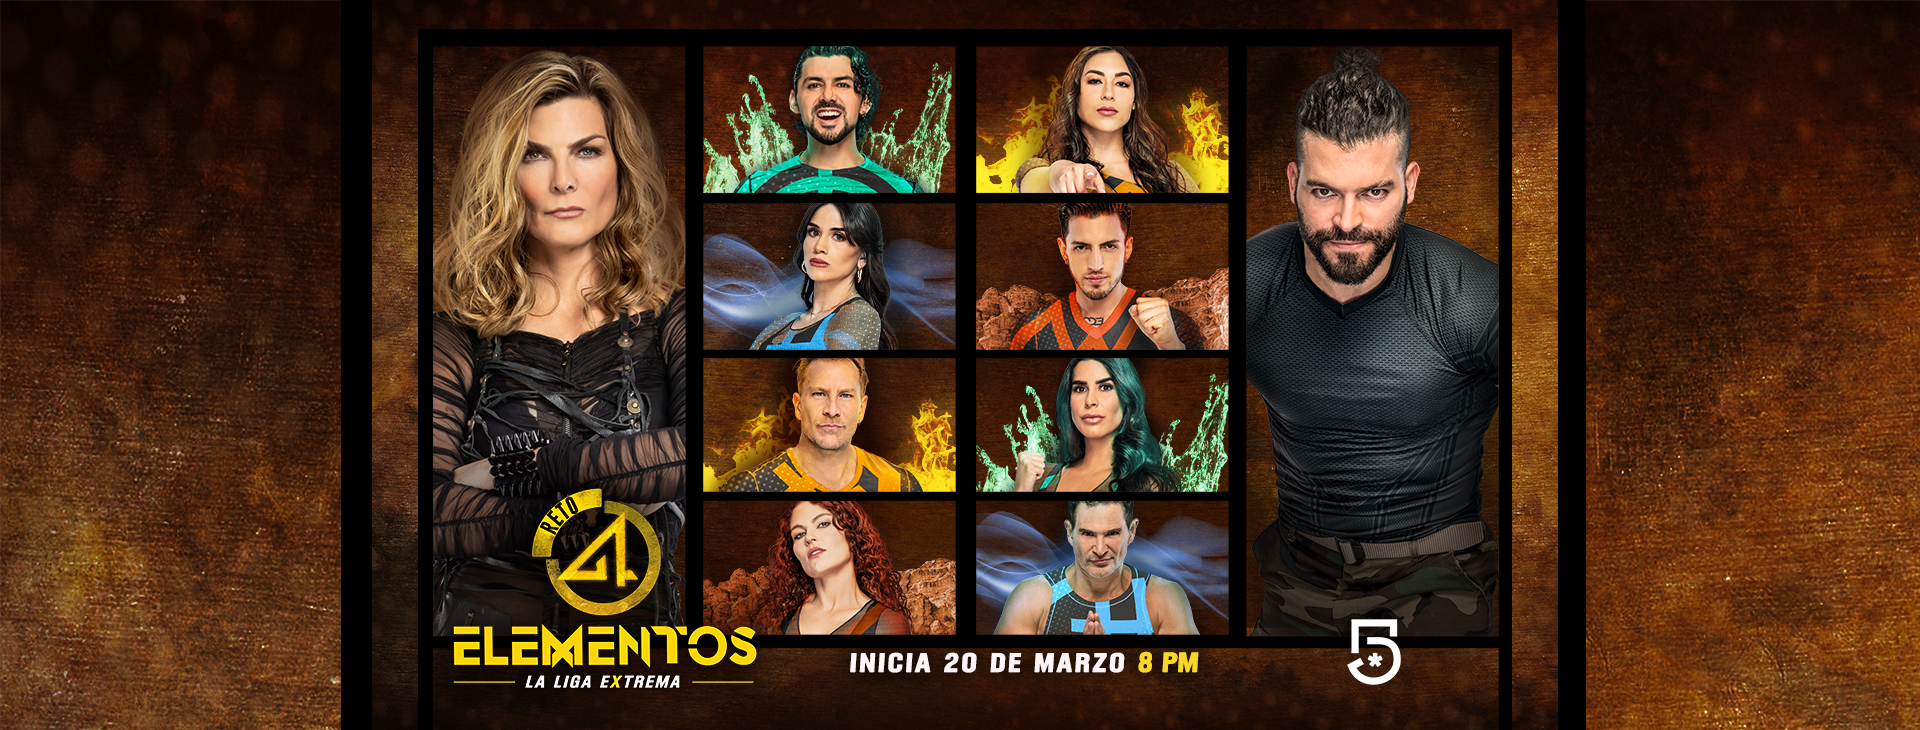 “Reto 4 Elementos, La Liga Extrema” estrena este lunes 20 de marzo a las 20:00 horas por Canal 5